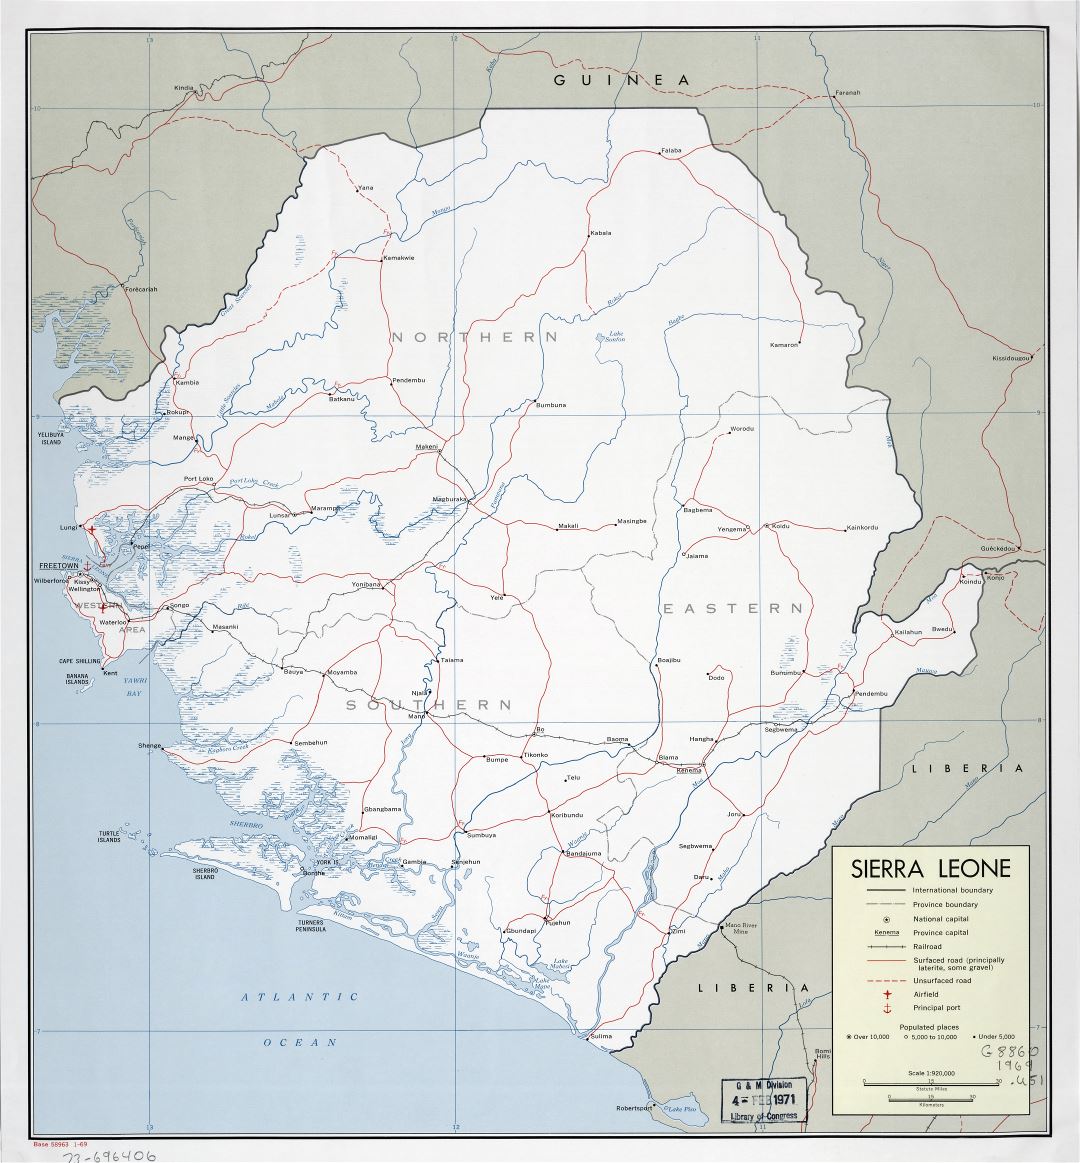 Крупномасштабная детальная политическая и административная карта Сьерра-Леоне с дорогами, железными дорогами, городами, портами и аэропортами - 1969